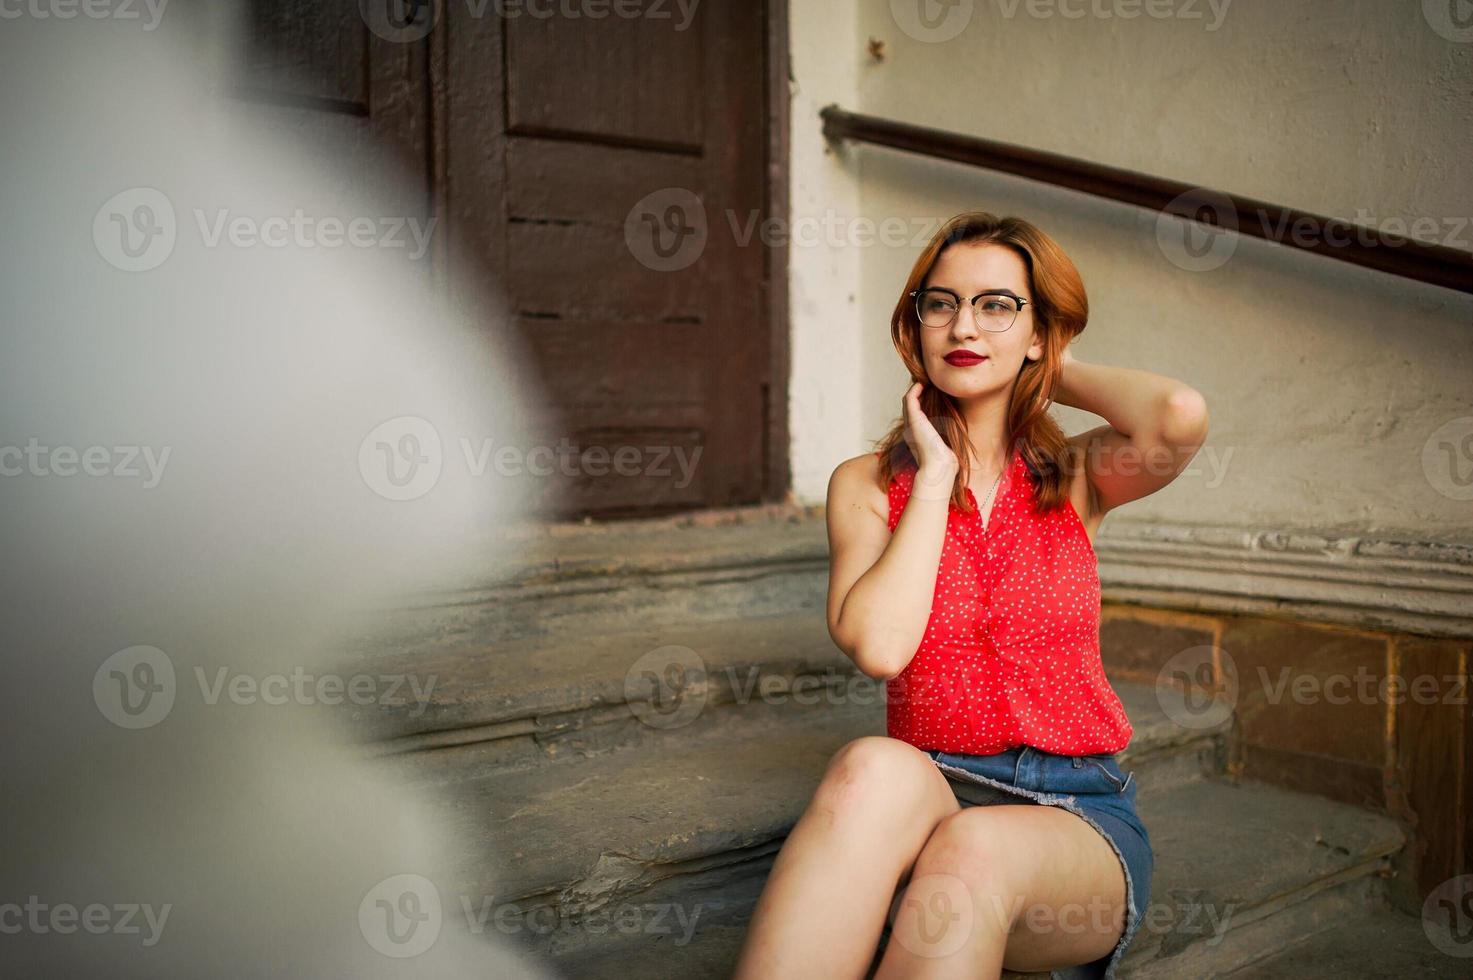 attraktive rothaarige frau mit brille, tragen auf roter bluse und jeansrock posieren. foto